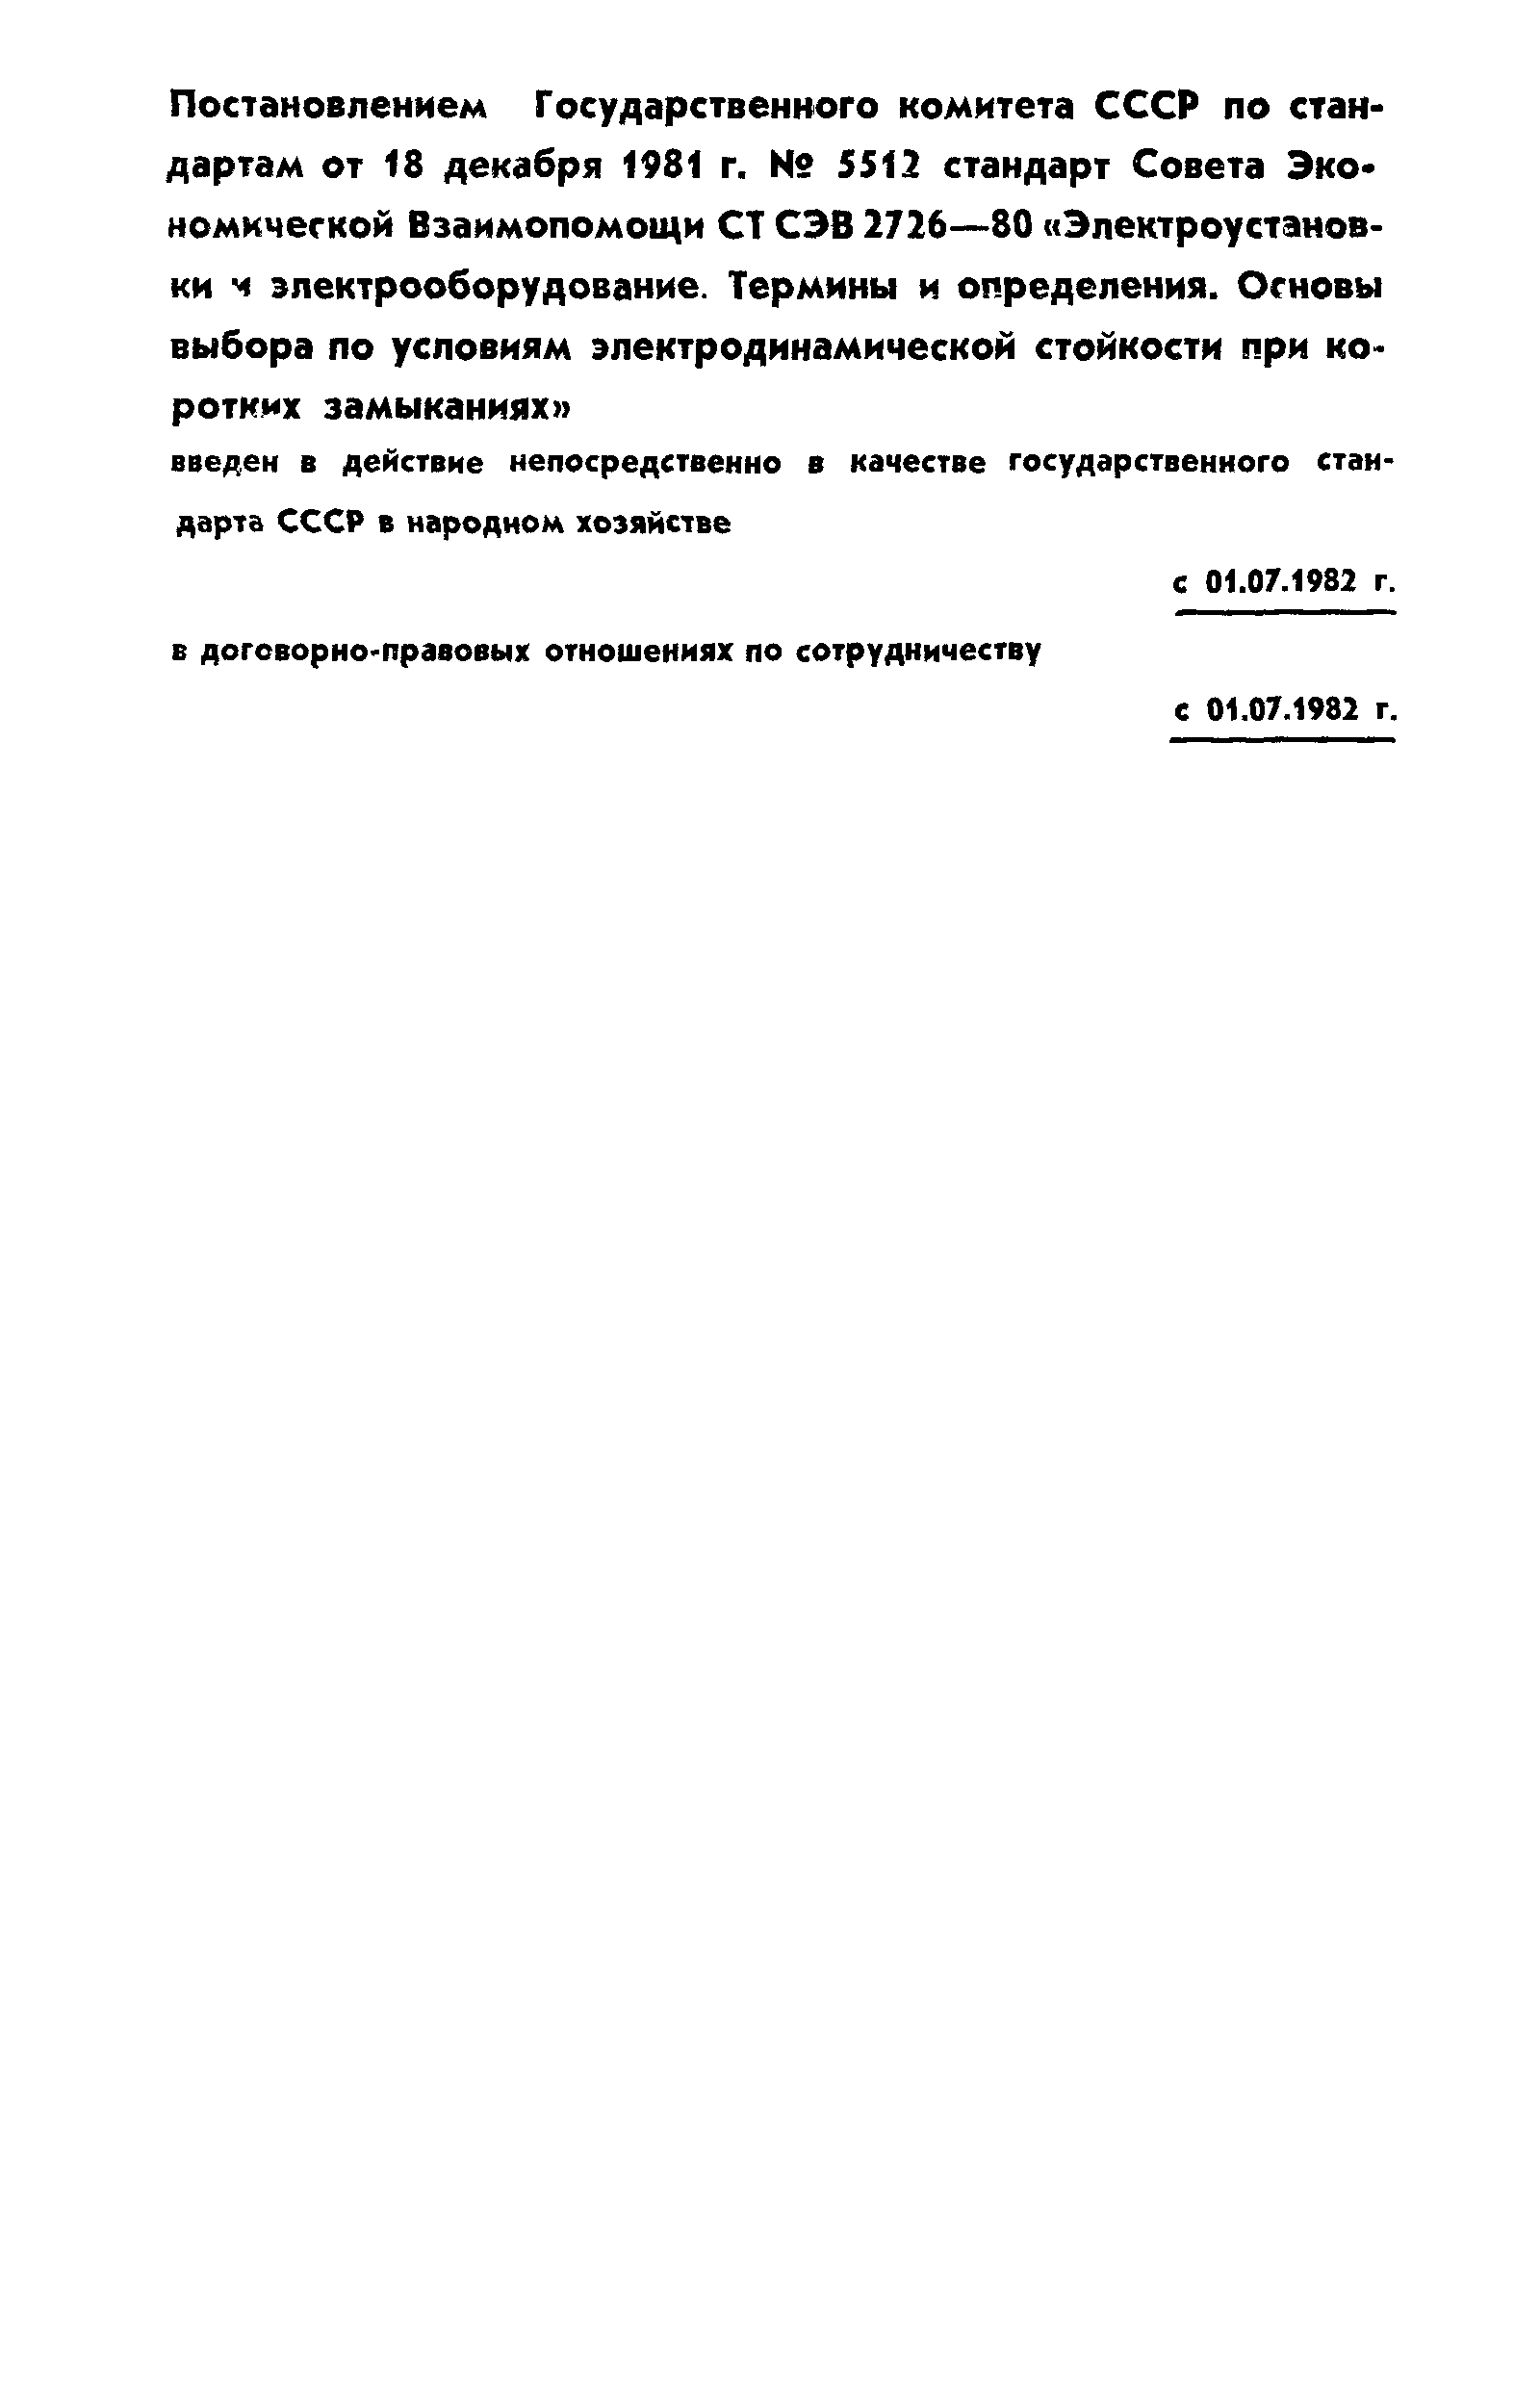 СТ СЭВ 2726-80